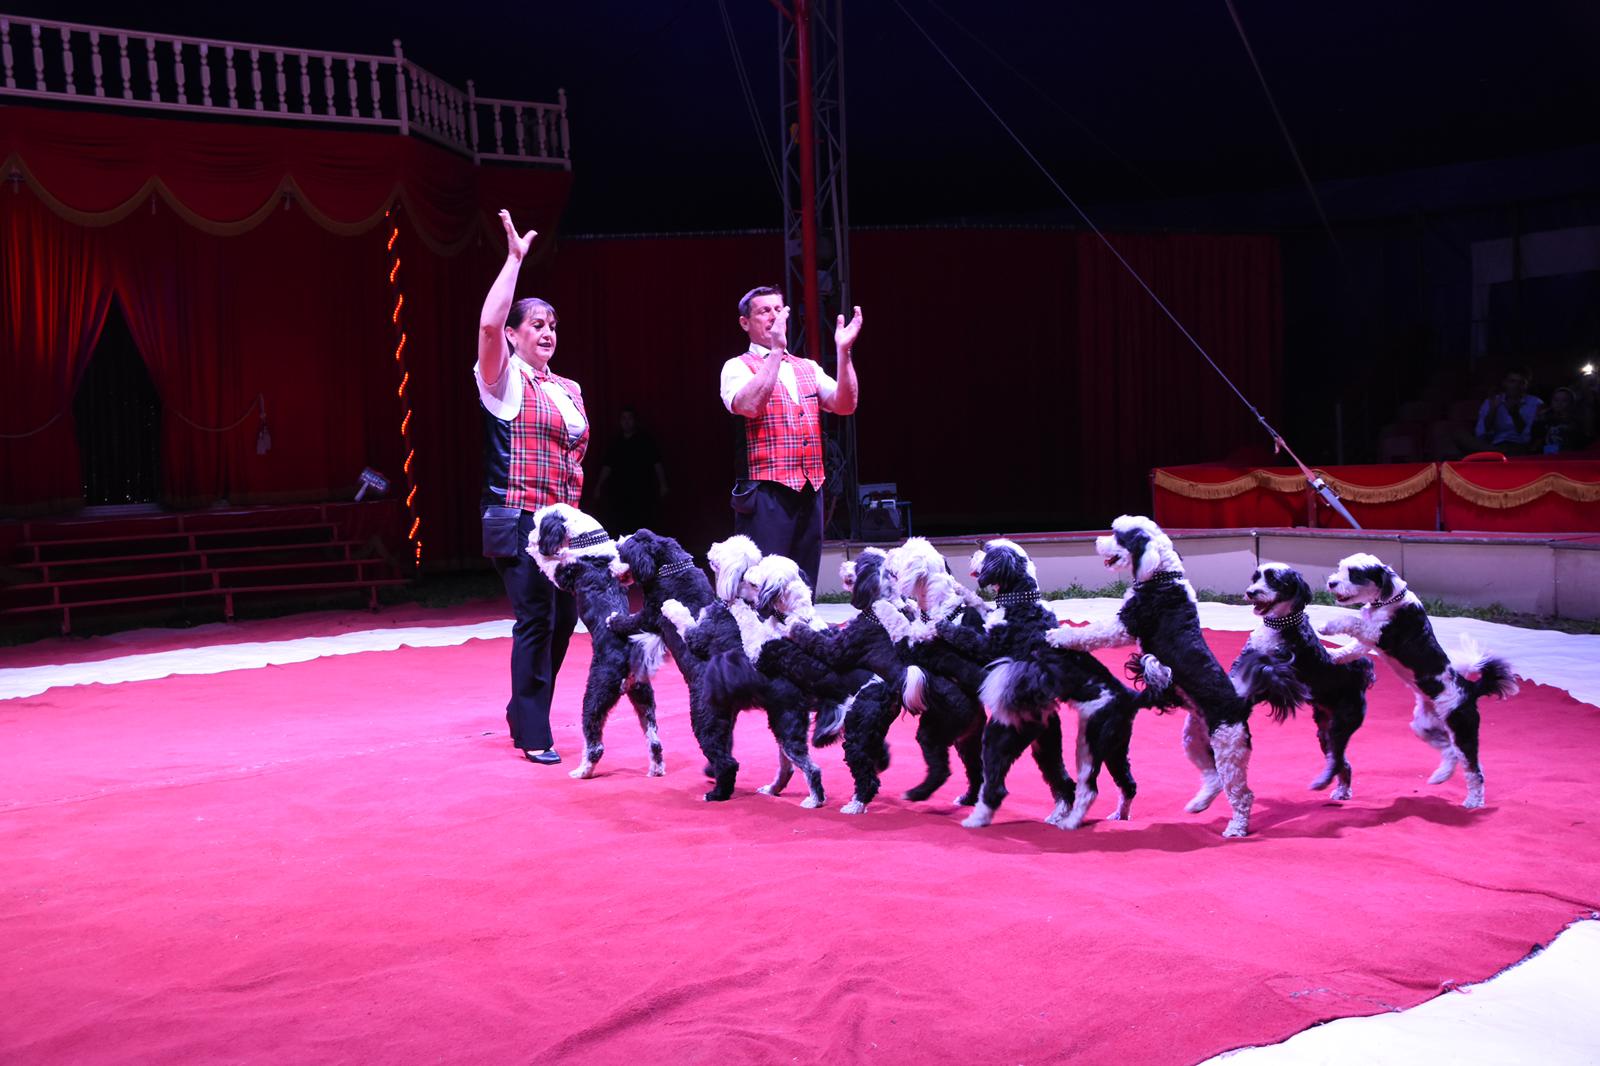 Circus Medrano Zwitserland met mooie uitschieters